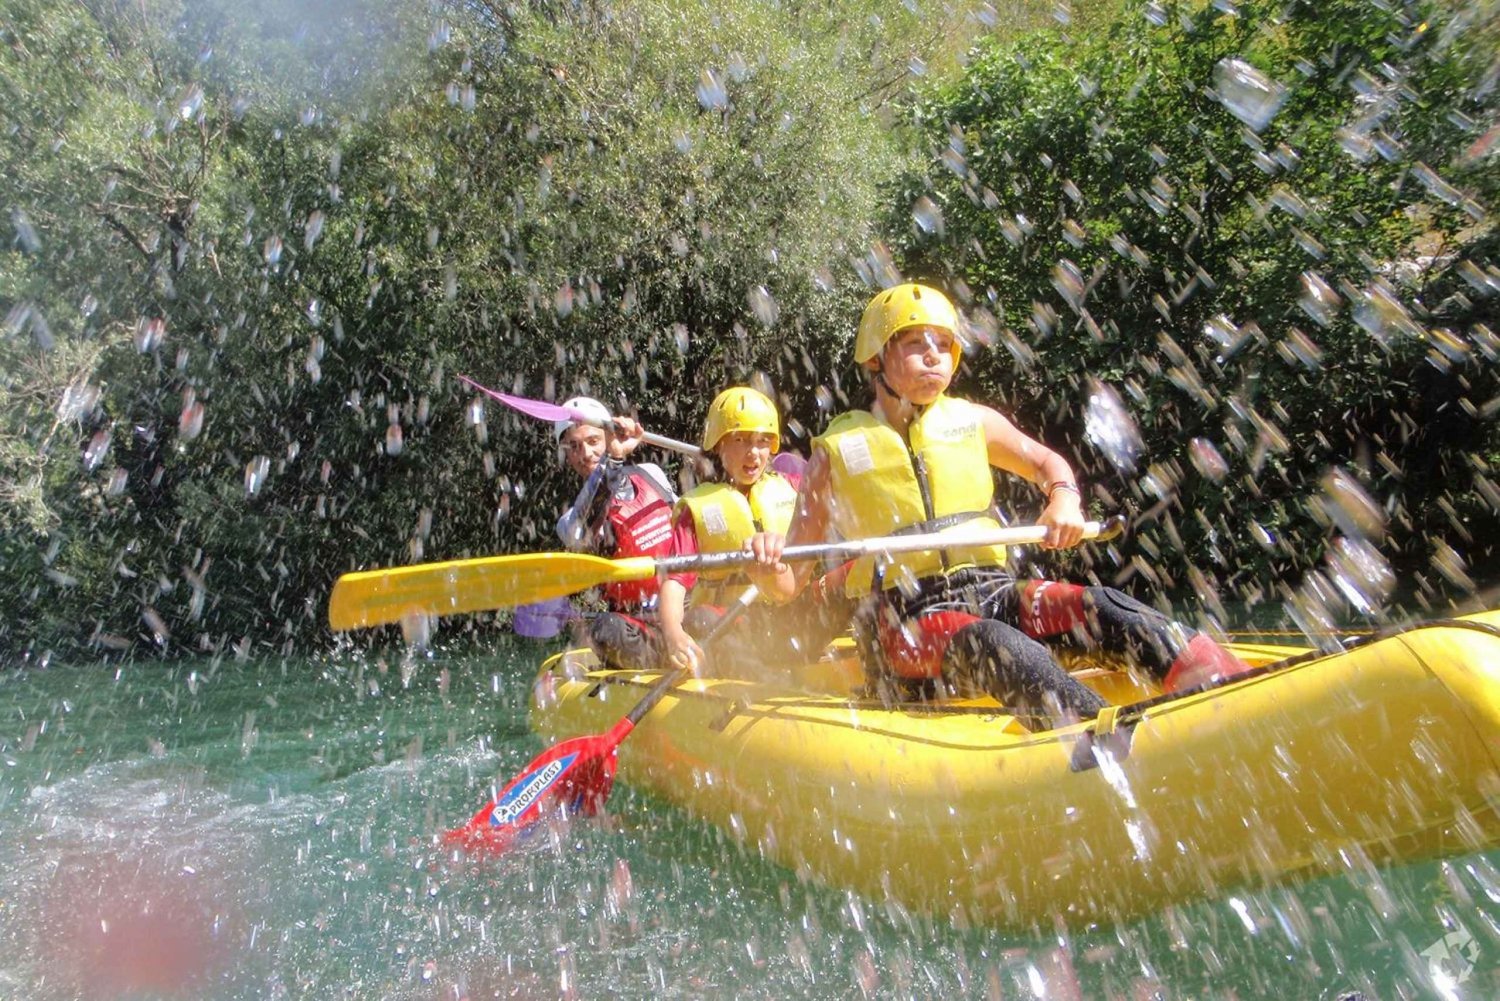 Rafting sul fiume Cetina di mezza giornata